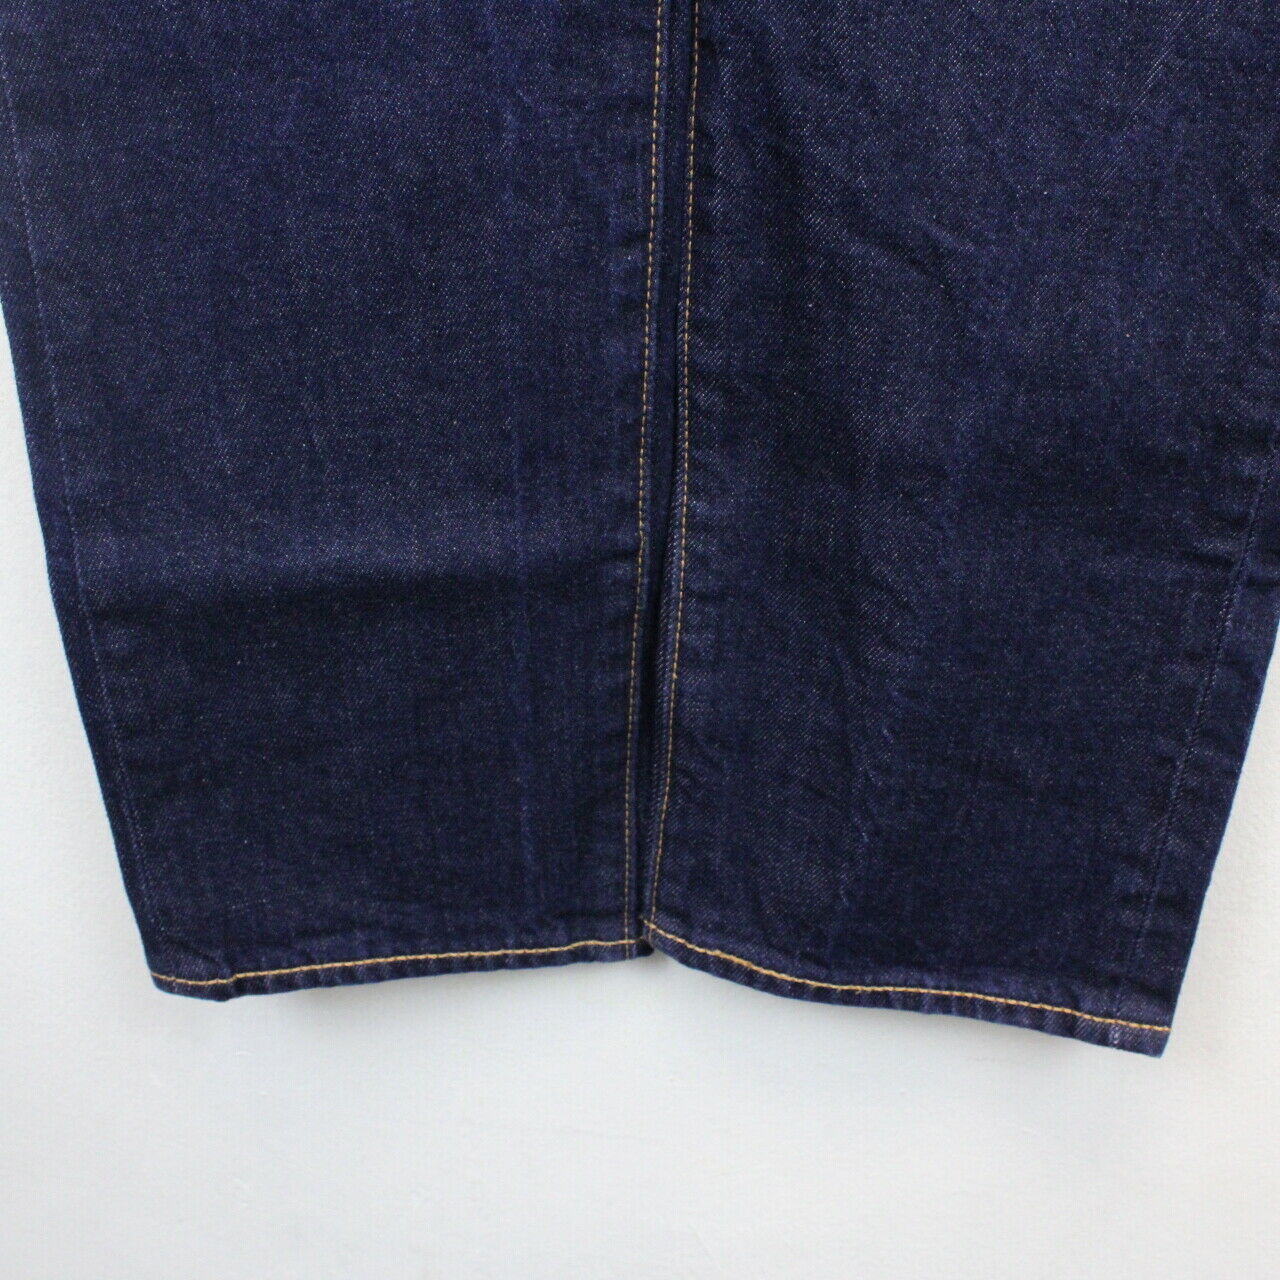 LEVIS 501 S Skinny Jeans Indigo | W34 L32